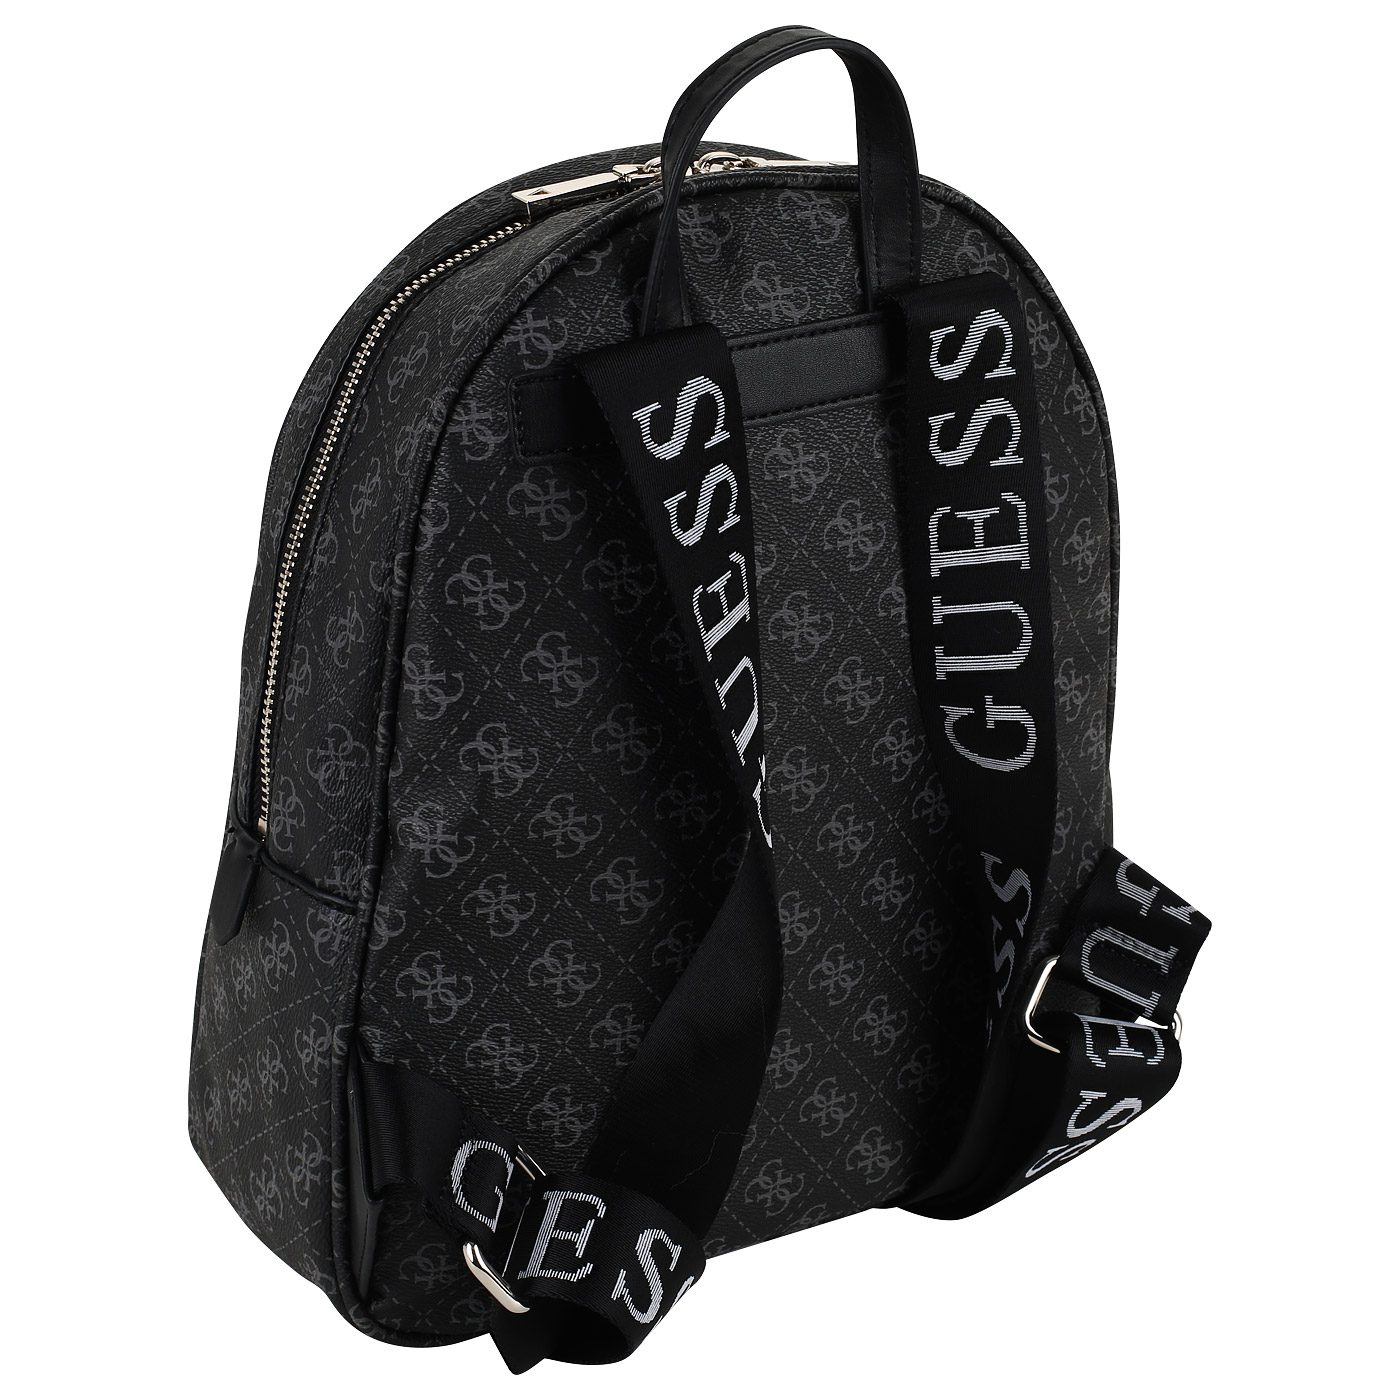 Рюкзак с логотипом бренда Guess Vikky